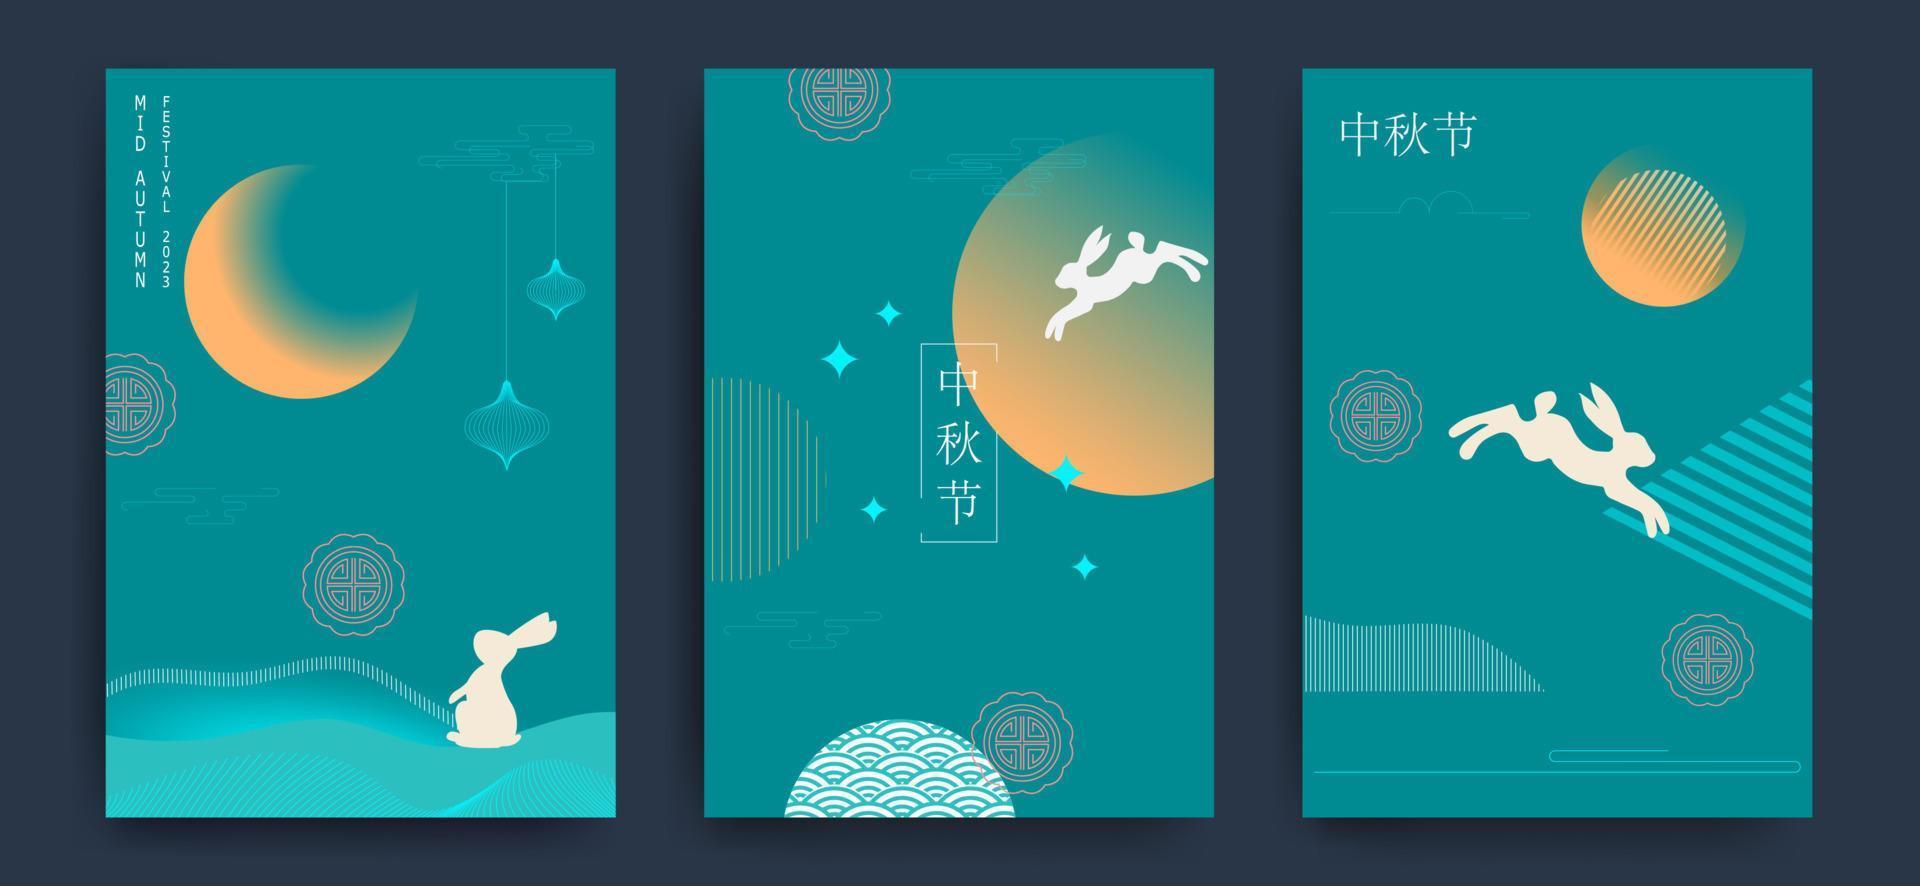 uppsättning bakgrunder, gratulationskort, affischer, semesteromslag med månen, månen tårta och söta kaniner. minimalistisk stil. kinesisk översättning - midhöstfestivalen. vektor